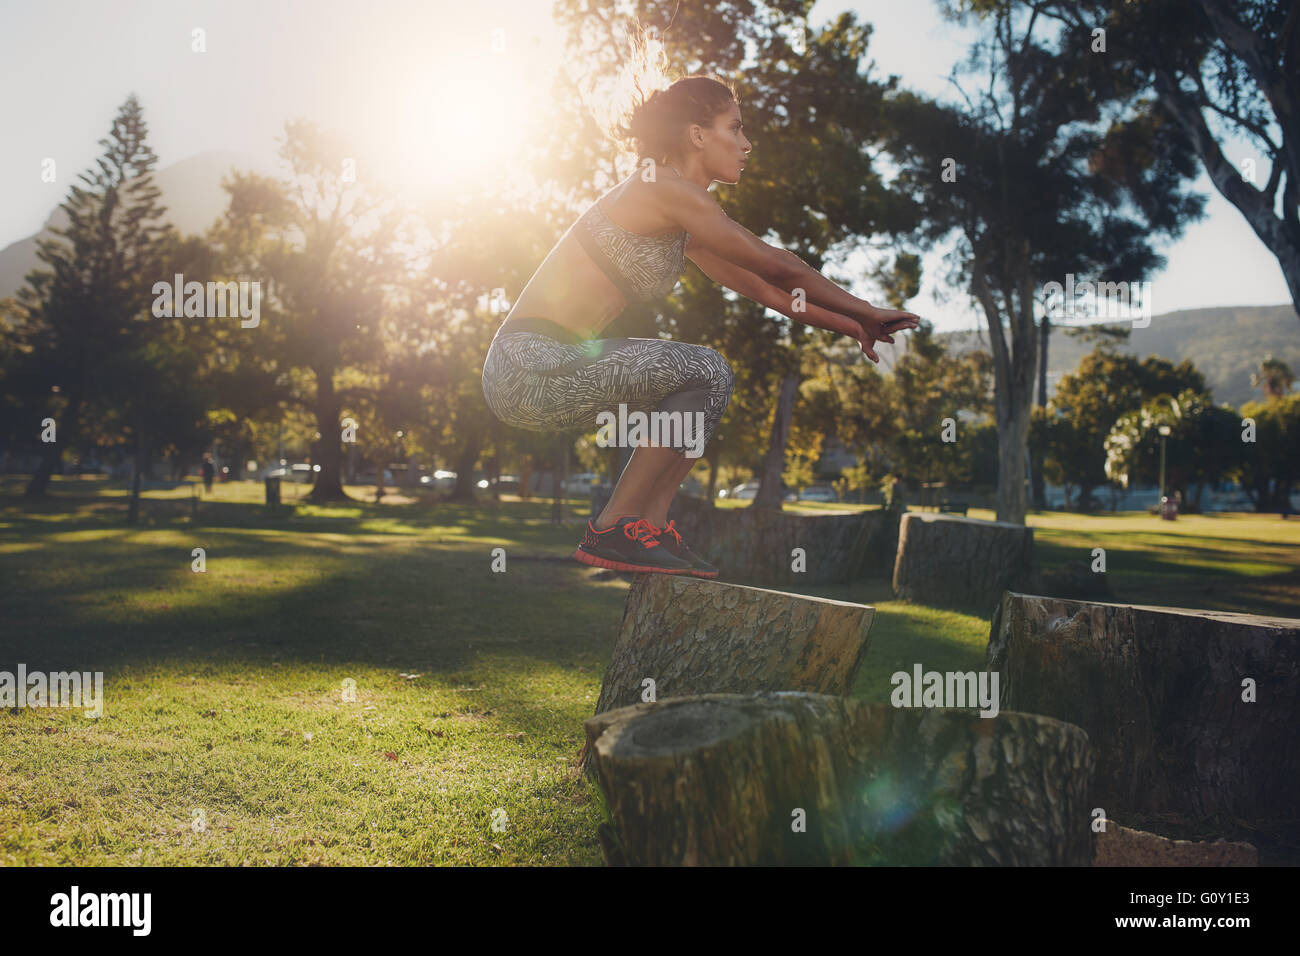 Aufnahme einer jungen Frau springt auf Holzscheit im Park. Sportlerin, die Bewegung in der Natur an einem sonnigen Tag zu tun. Feld springt. Stockfoto